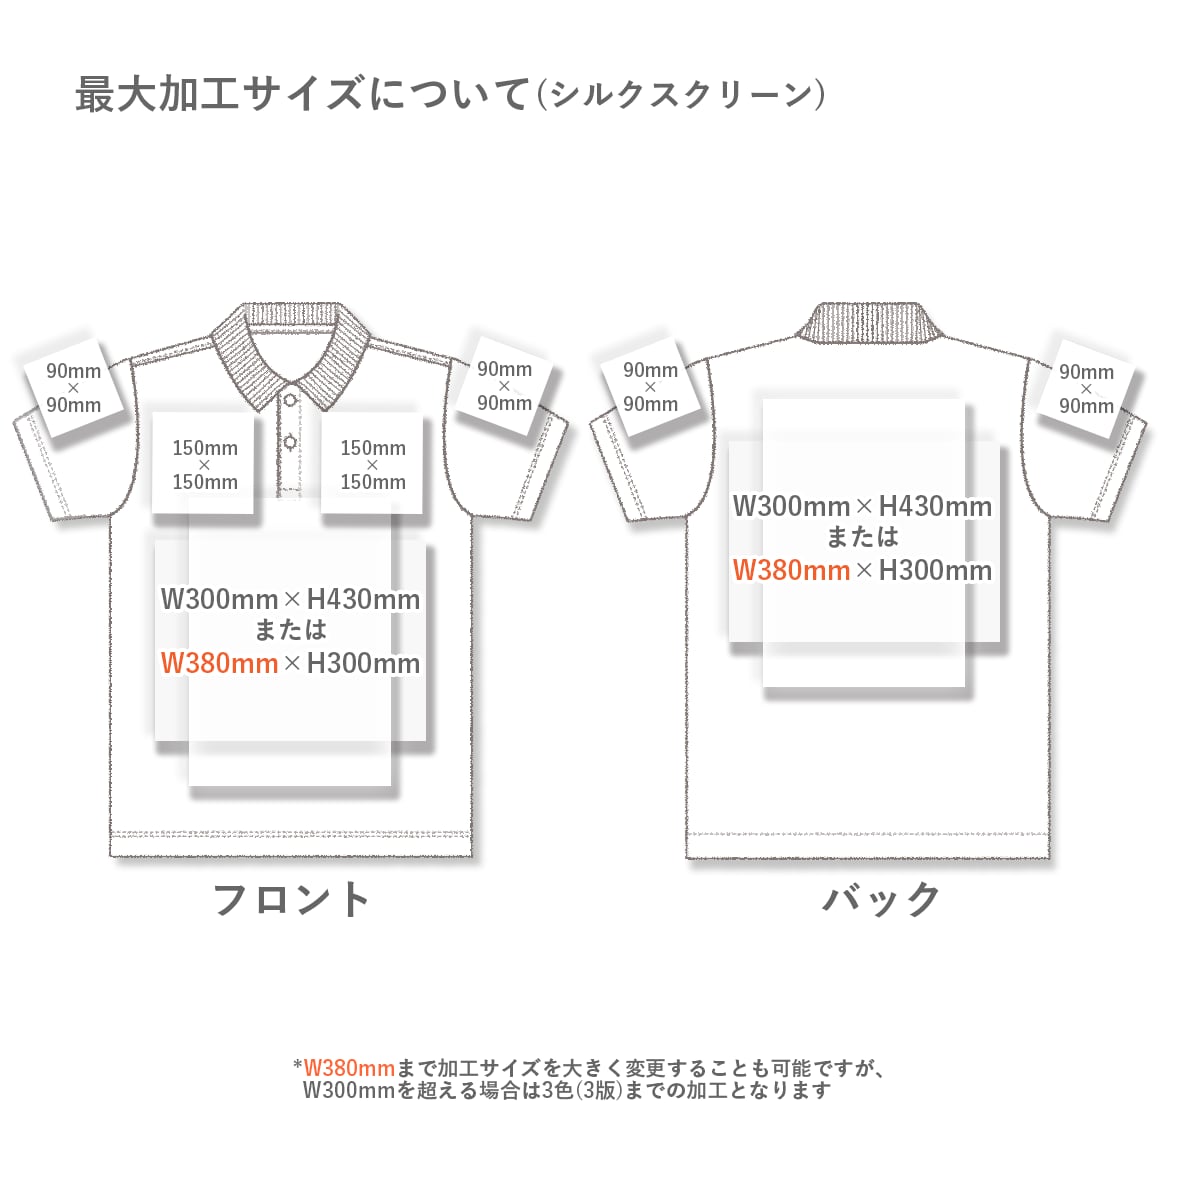 【在庫限り】Tri-Mountain トライマウンテン 7.5 oz Men's cotton pique golf shirt with jacquard trim (品番TRI196)